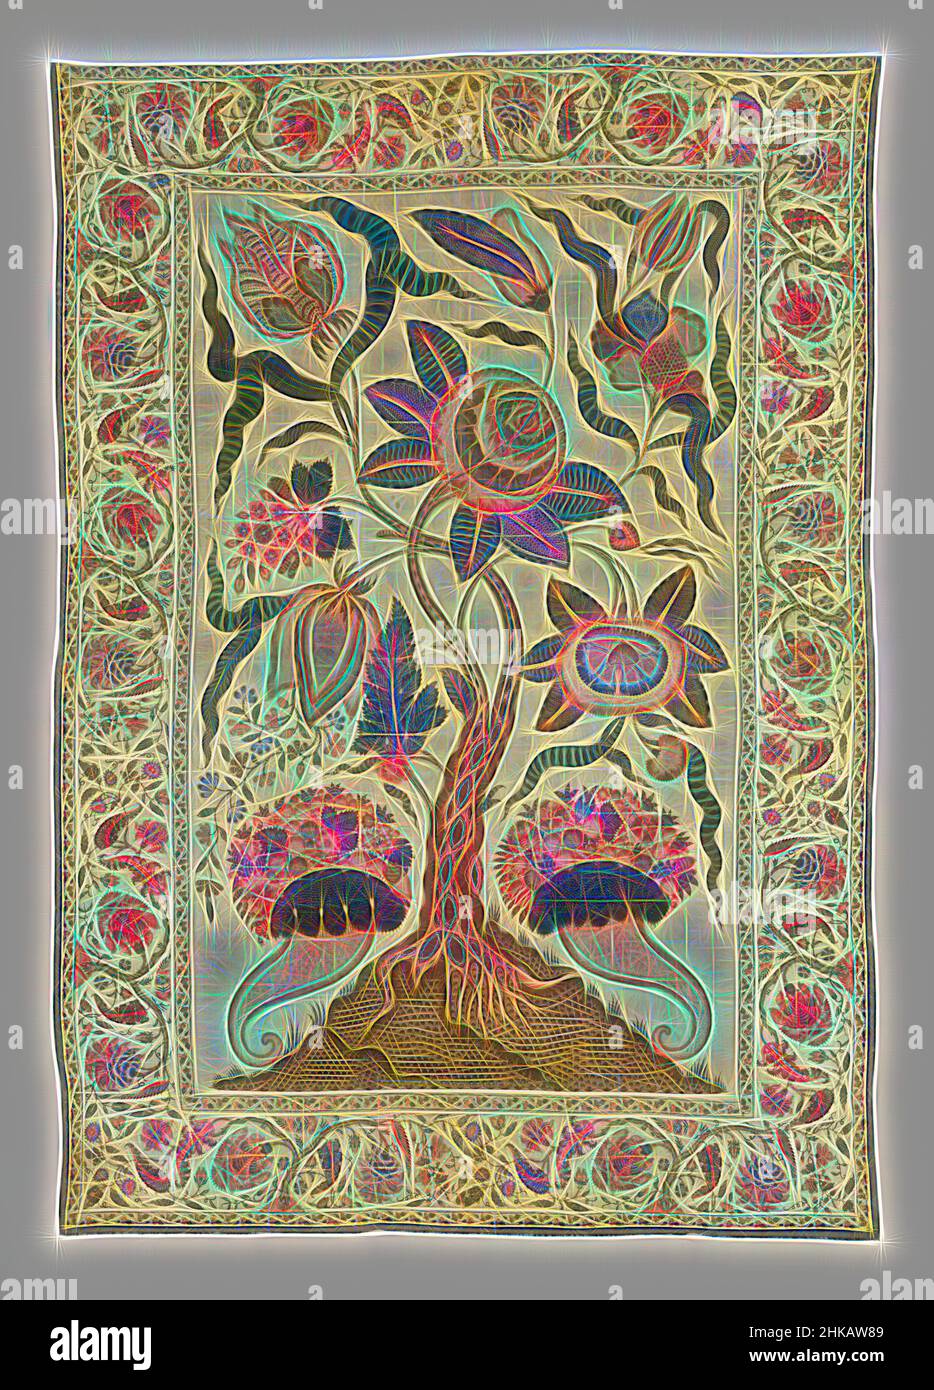 Inspiré par le couvre-lit ou la palempore de satin, décoré d'un arbre avec de grandes fleurs et deux cornes de l'abondance, couvre-lit ou palempore de satin, décoré d'un arbre avec de grandes fleurs et deux cornes de l'abondance., Coromandelkust, c. 1750 - c. 1775, coton (textile), longueur 315,0 cm × largeur 220,0 cm, repensé par Artotop. L'art classique réinventé avec une touche moderne. Conception de lumière chaleureuse et gaie, de luminosité et de rayonnement de lumière. La photographie s'inspire du surréalisme et du futurisme, embrassant l'énergie dynamique de la technologie moderne, du mouvement, de la vitesse et révolutionne la culture Banque D'Images